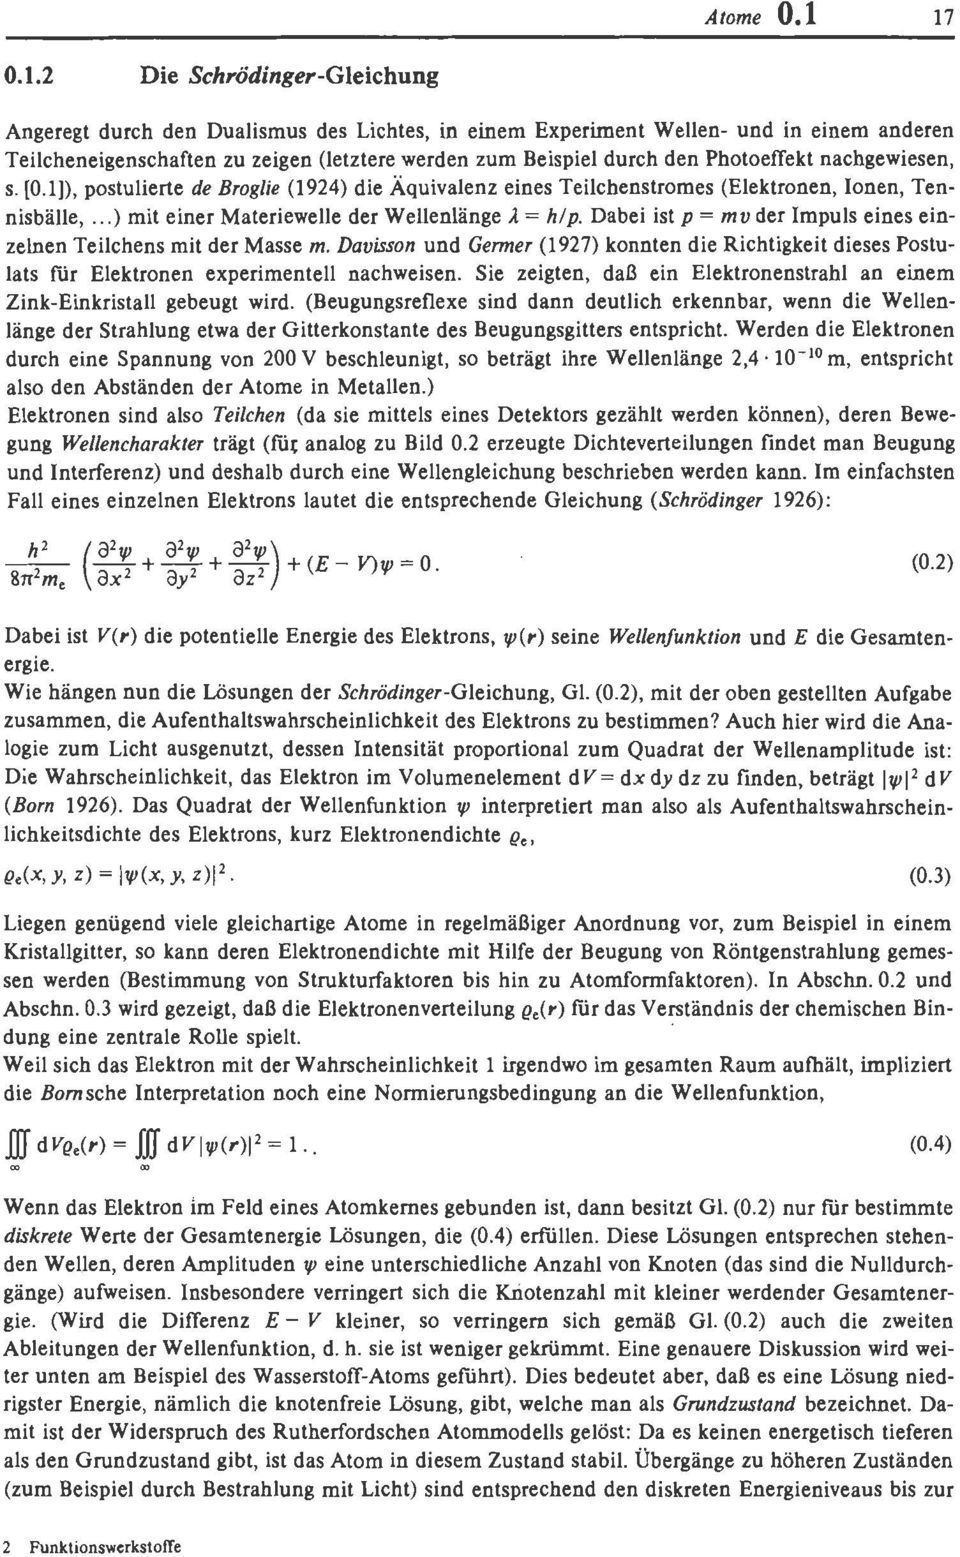 Photoeffekt nachgewiesen, s. [Oll), postulierte de Broglie (1924) die Äquivalenz eines Teilchenstromes (Elektronen, Ionen, Tennisbälle,...) mit einer Materiewelle der Weilenlänge 1 = hlp.